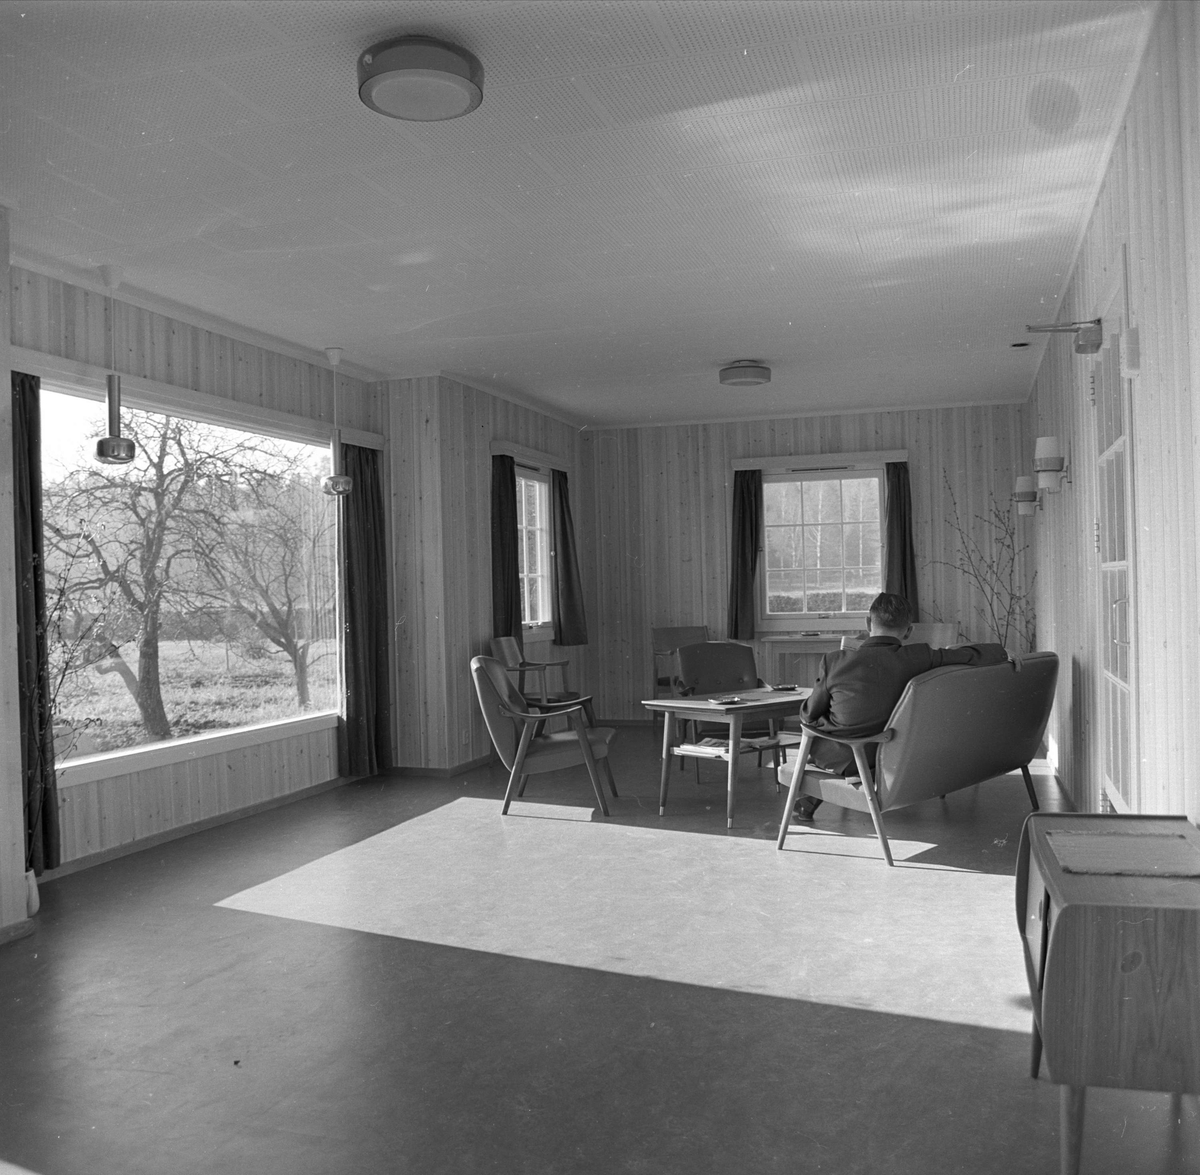  Statens sykehus for epilepsi ,Bærum, 12.03.1964. Interiør med bord og stoler, fra oppholdsrommene, mann sittende i stol.